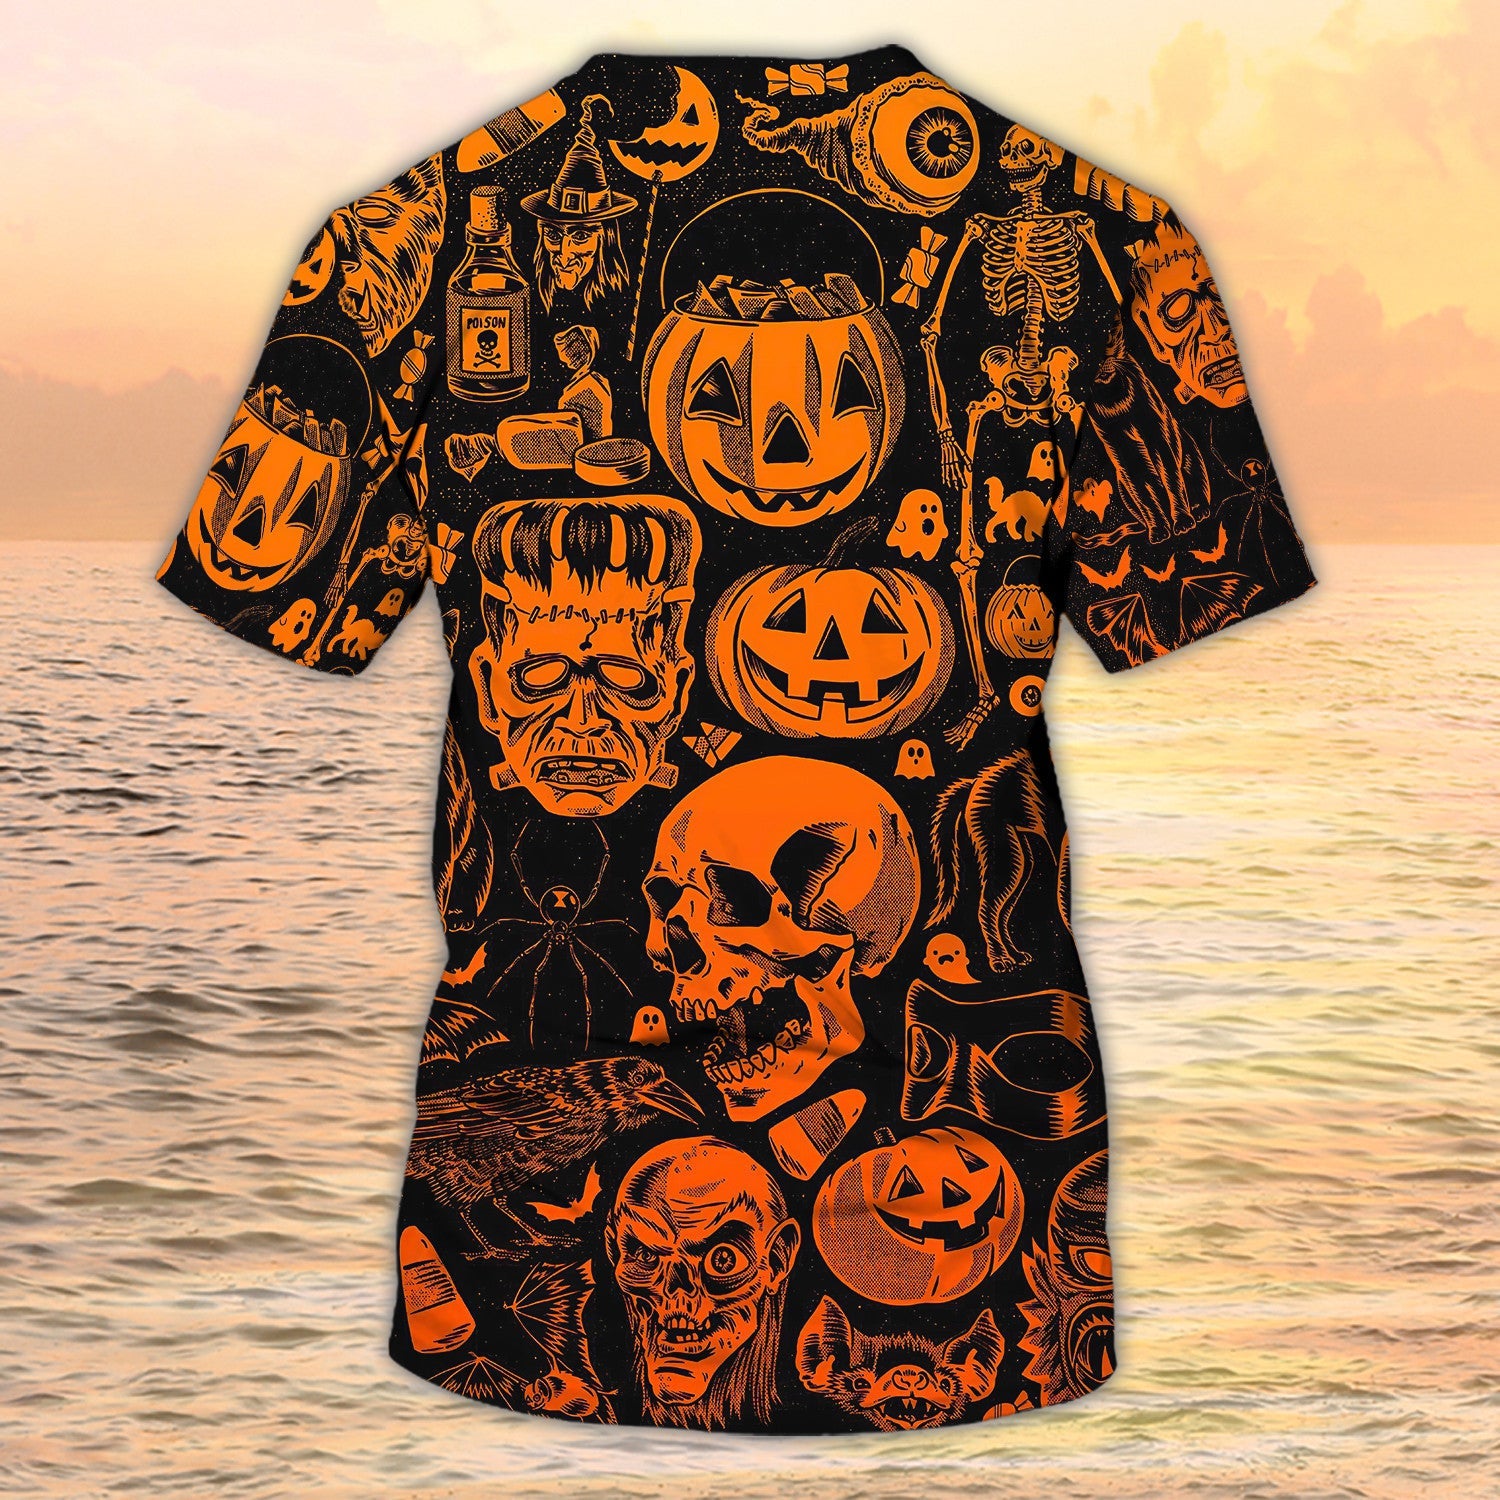 3D Skull Halloween Tshirt Full Of Skull On Shirt For Halloween Best Gift Halloween